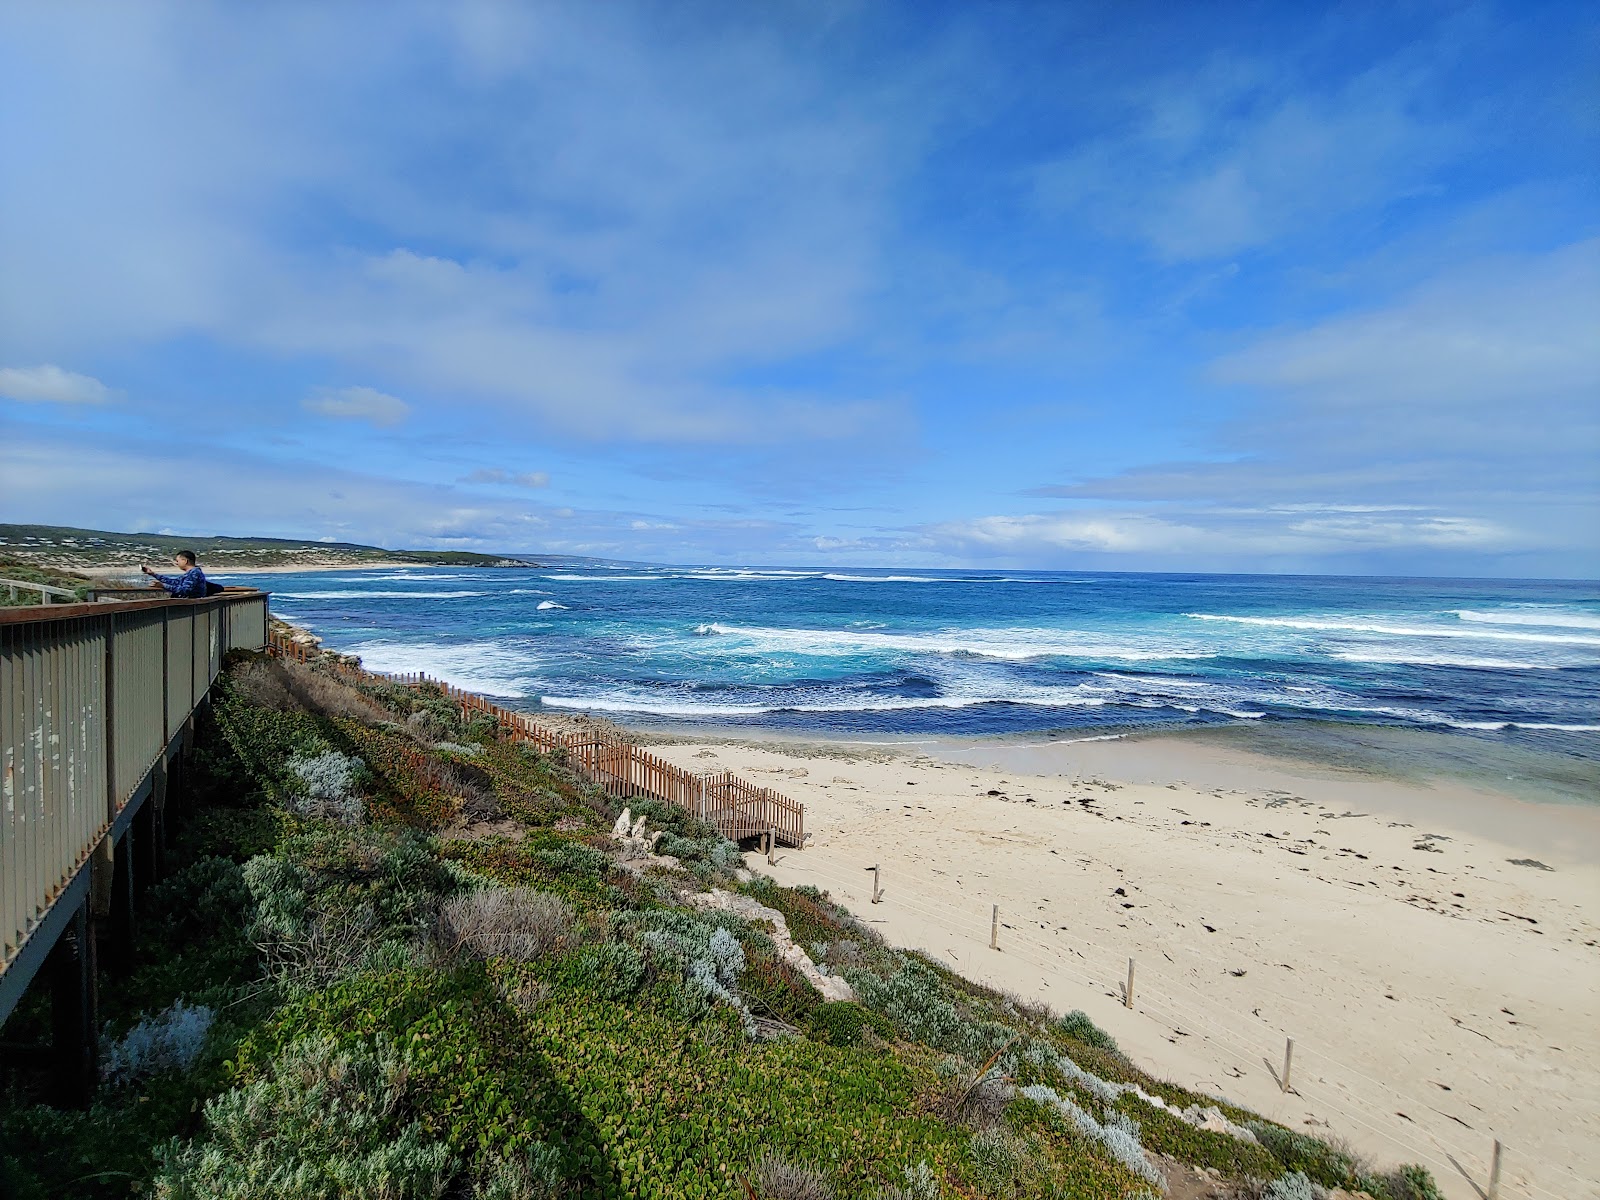 Foto de Surrers Beach - lugar popular entre los conocedores del relax